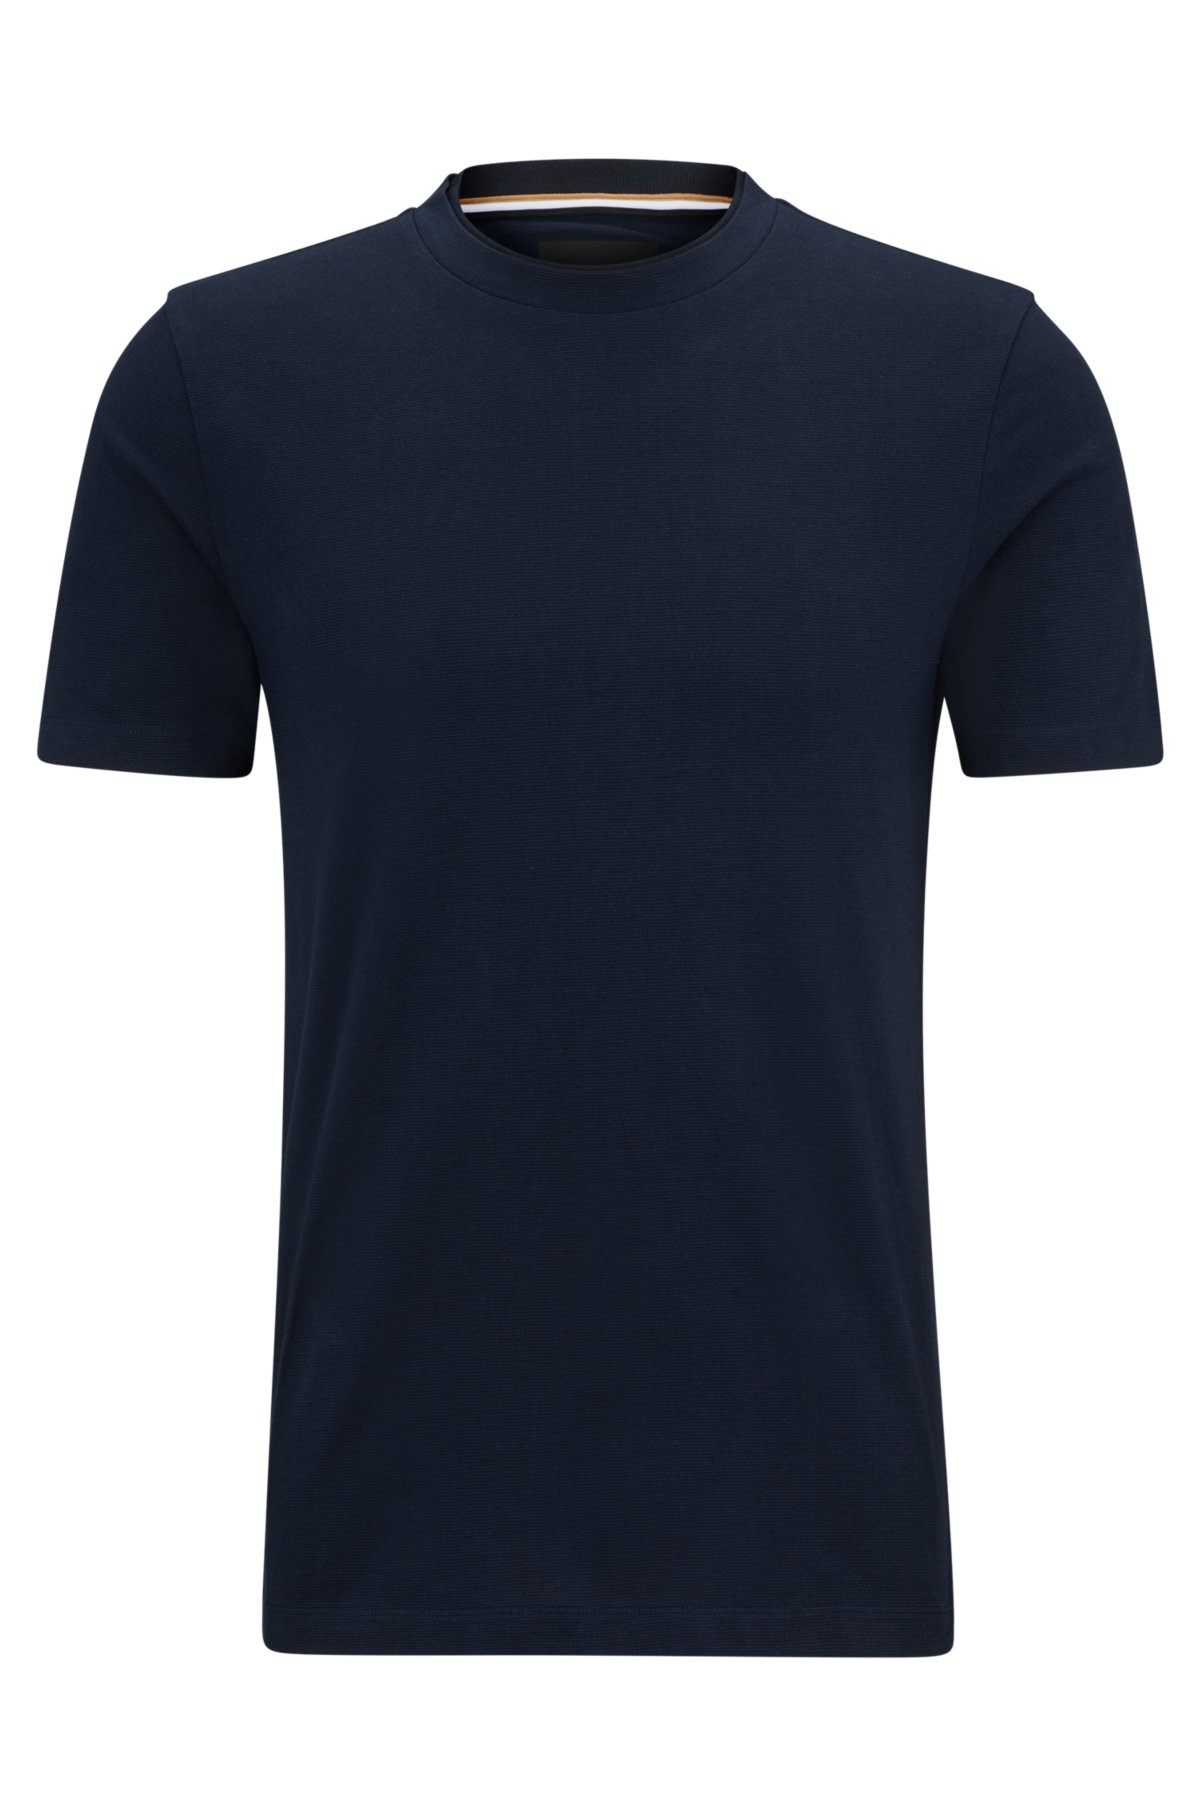 Louis Vuitton 2019 Upside Down Logo Pocket T-Shirt w/ Tags - White